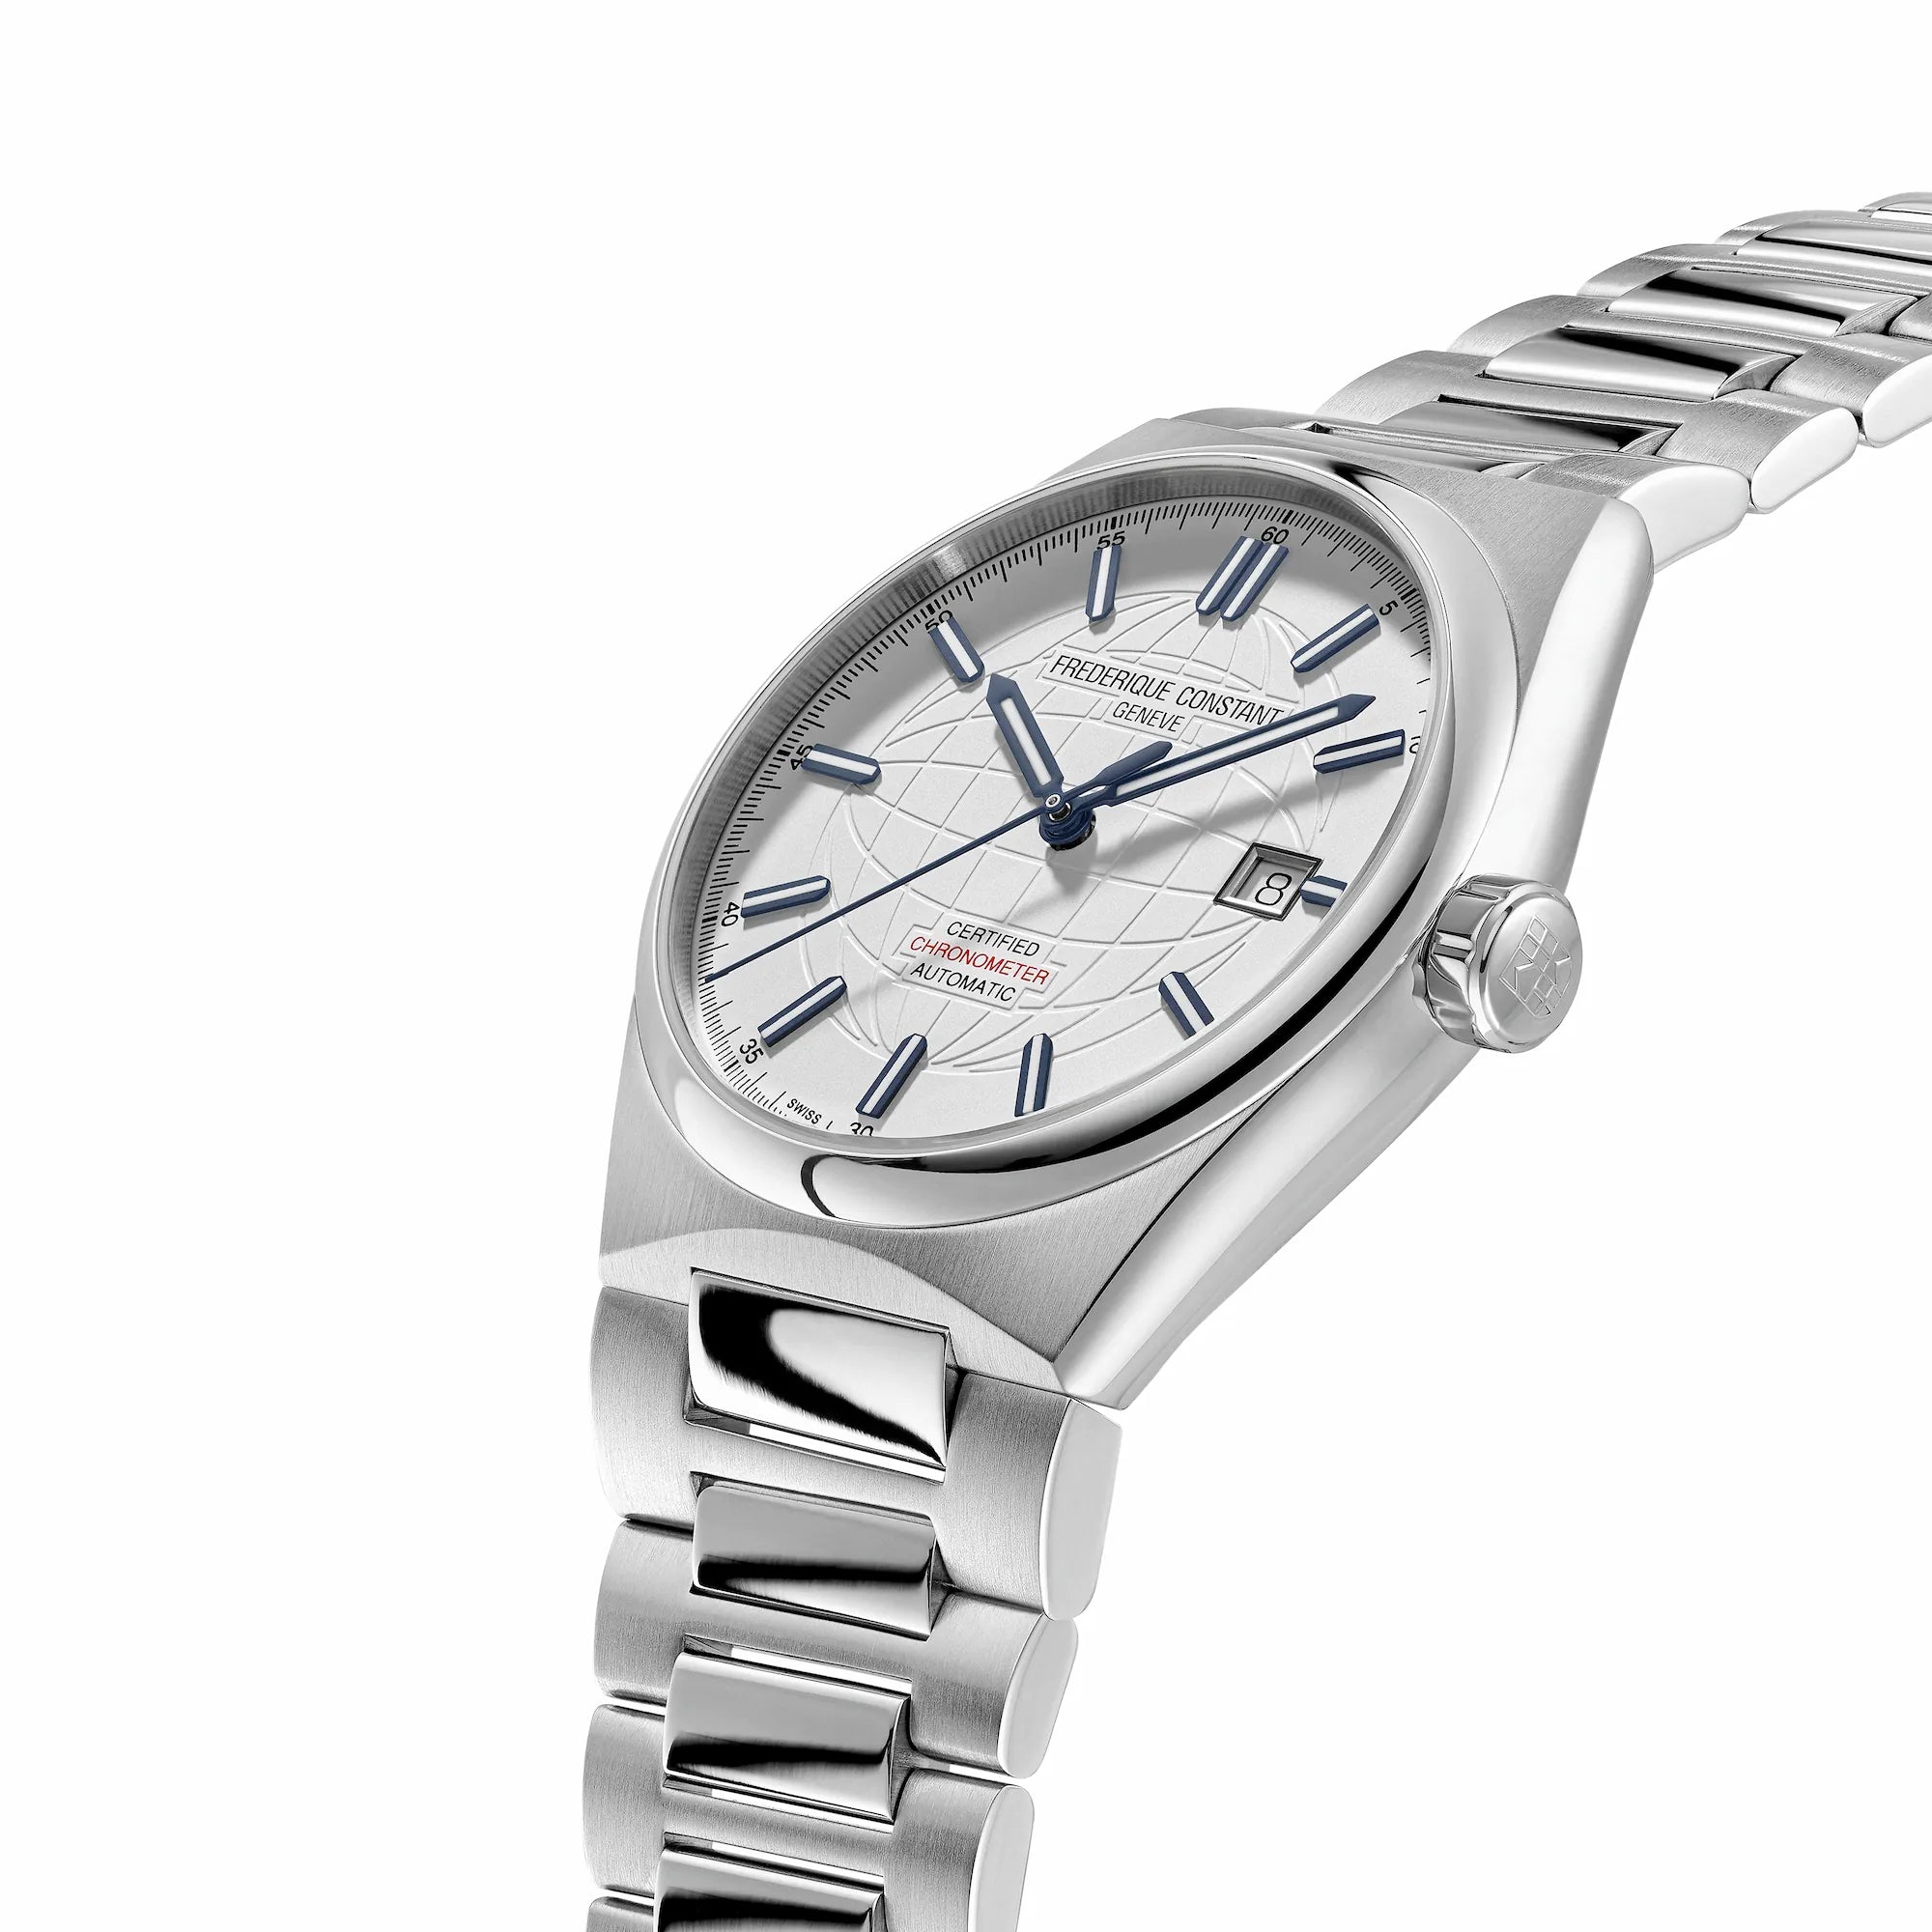 Leicht seitliche Ansicht des Uhren-Modells "Highlife Automatic COSC" mit dem weißen Zifferblatt mit blauen Indizes von Frederique Constant